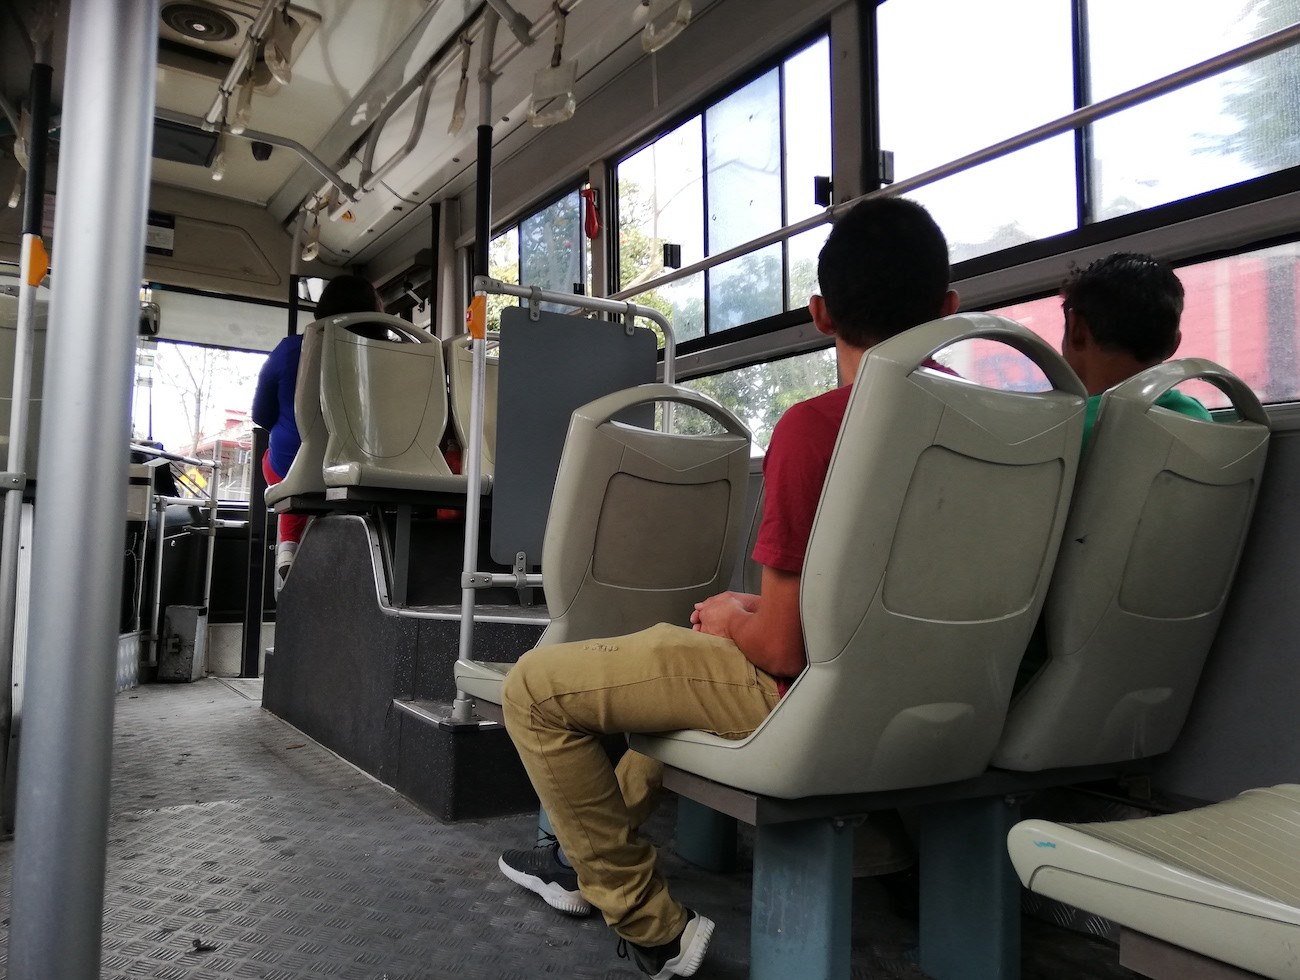 Tarifa de autobuses disminuirán entre ¢5 y ¢680, informó Aresep